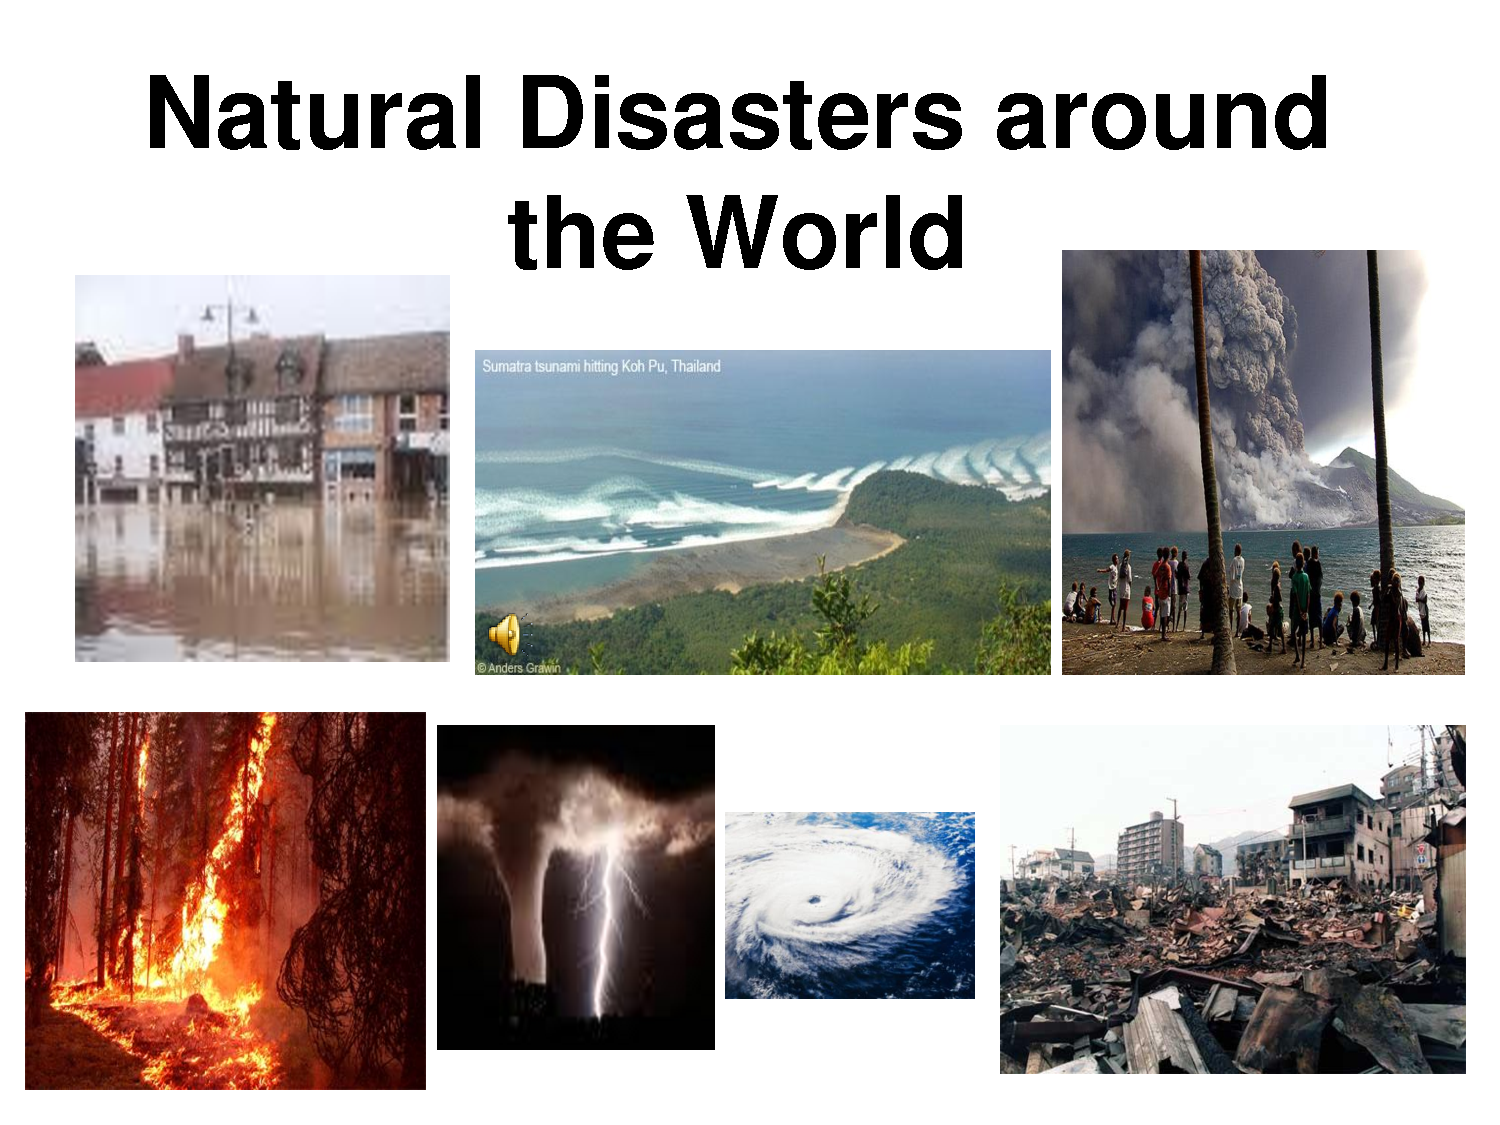 Natural disasters in kazakhstan